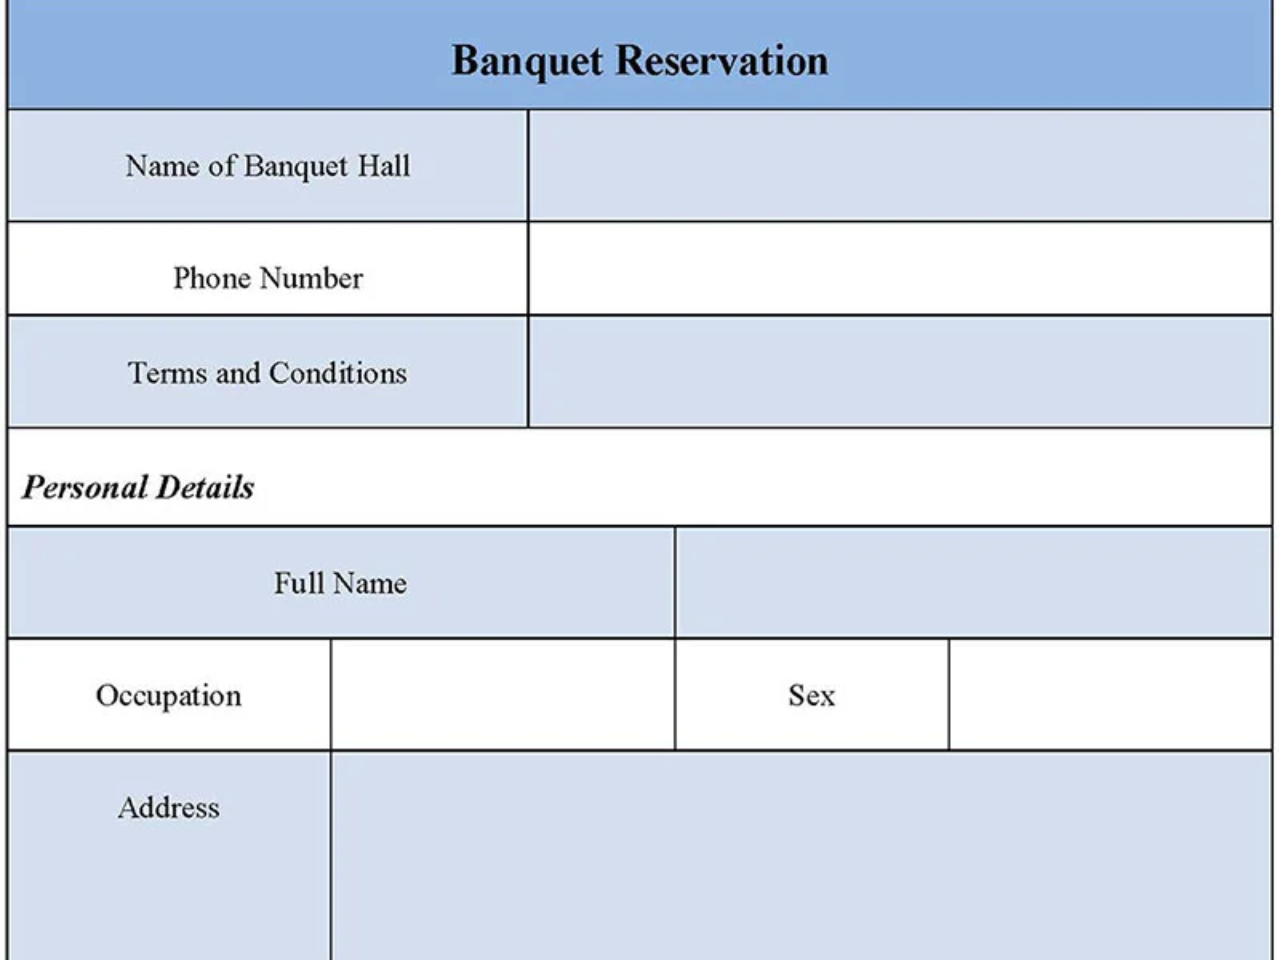 Banquet Reservation Form